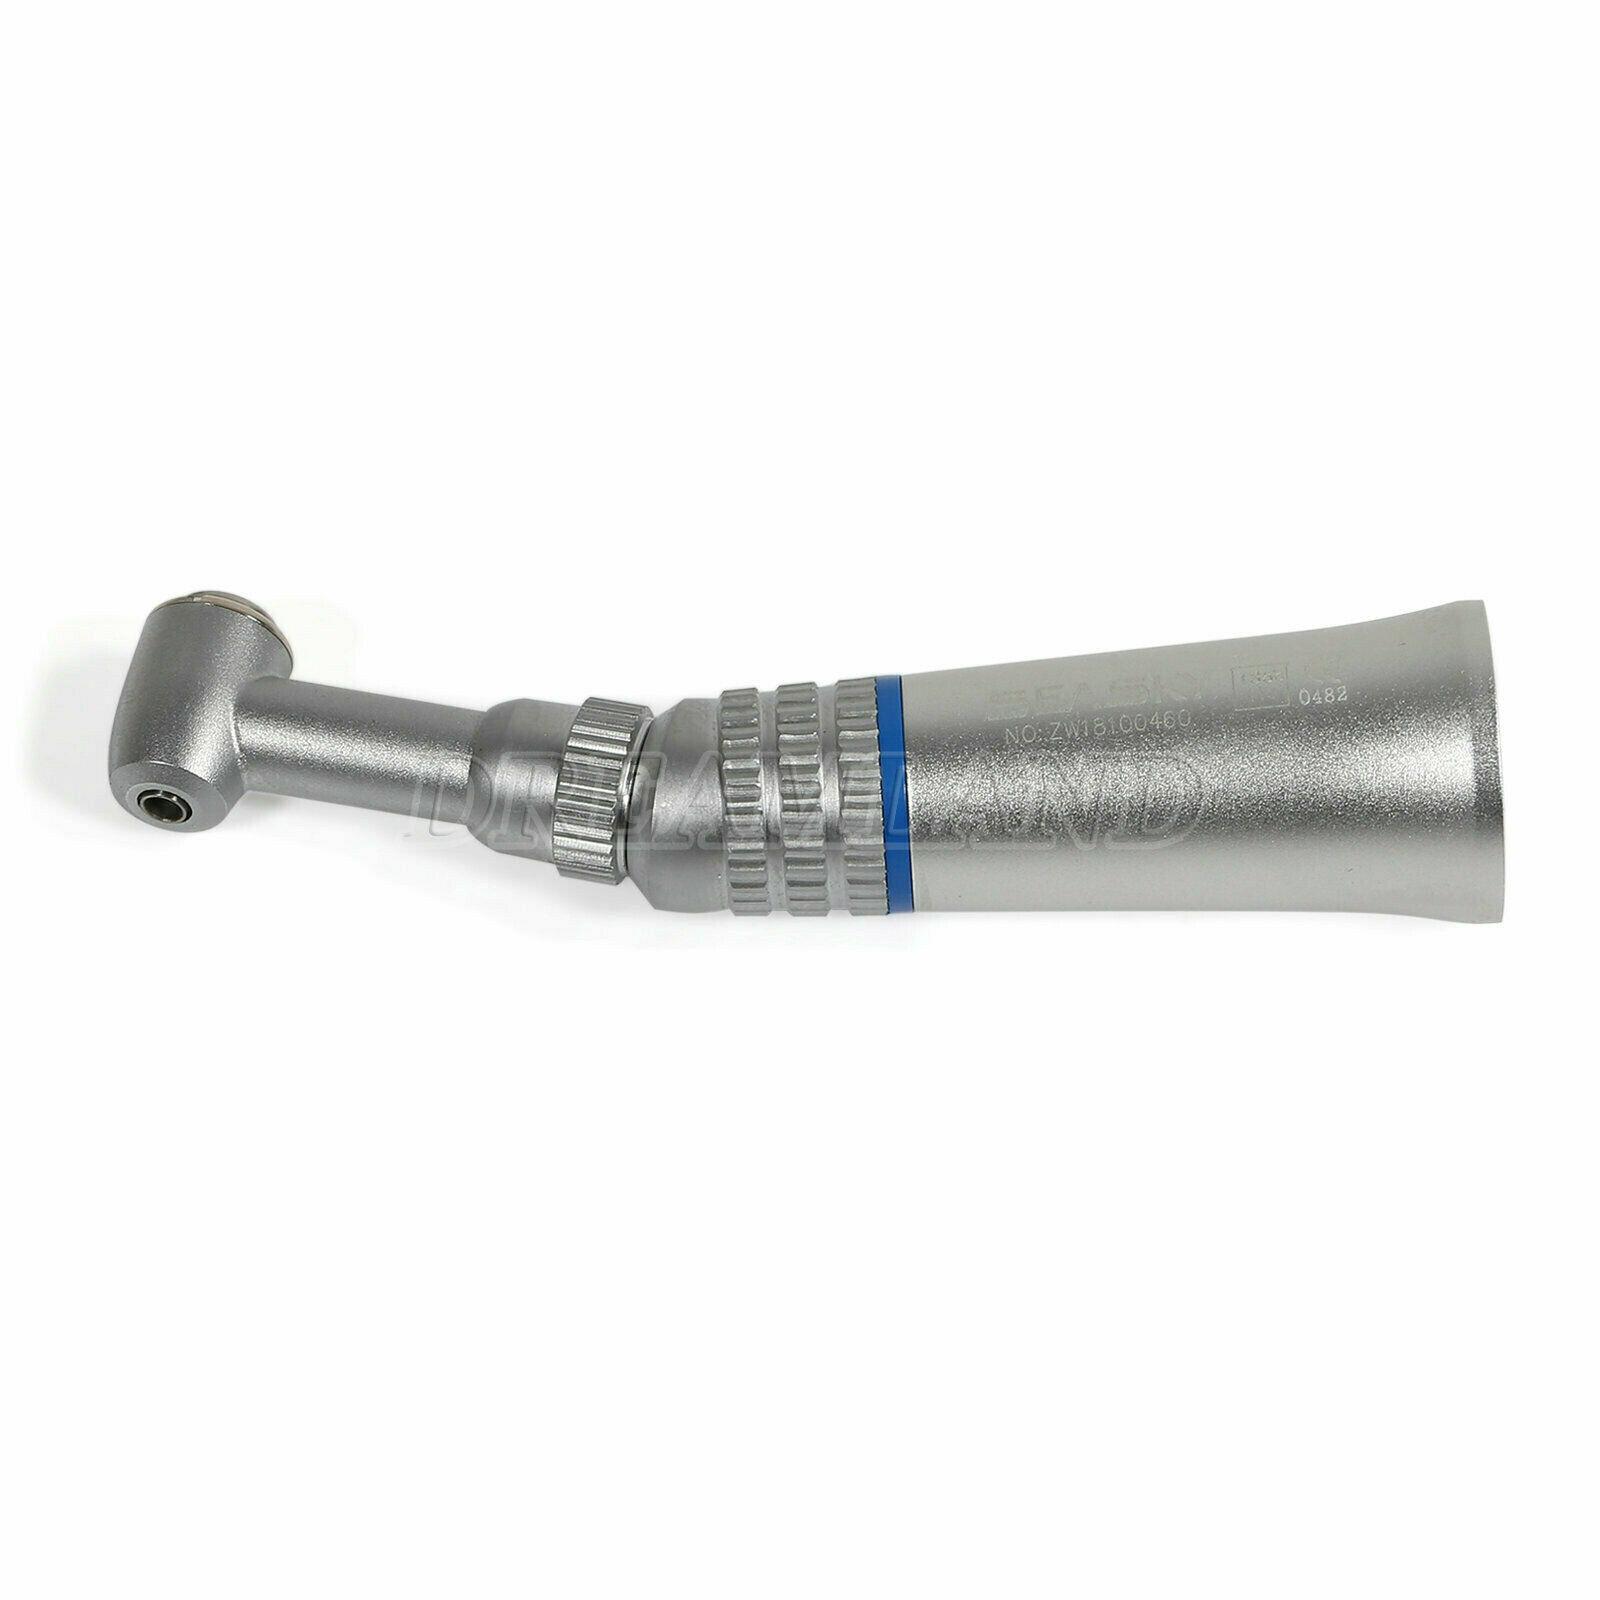 Изображение товара: 5 * NSK стильная Стоматологическая низкоскоростная Накладка для углового наконечника с нажимной кнопкой